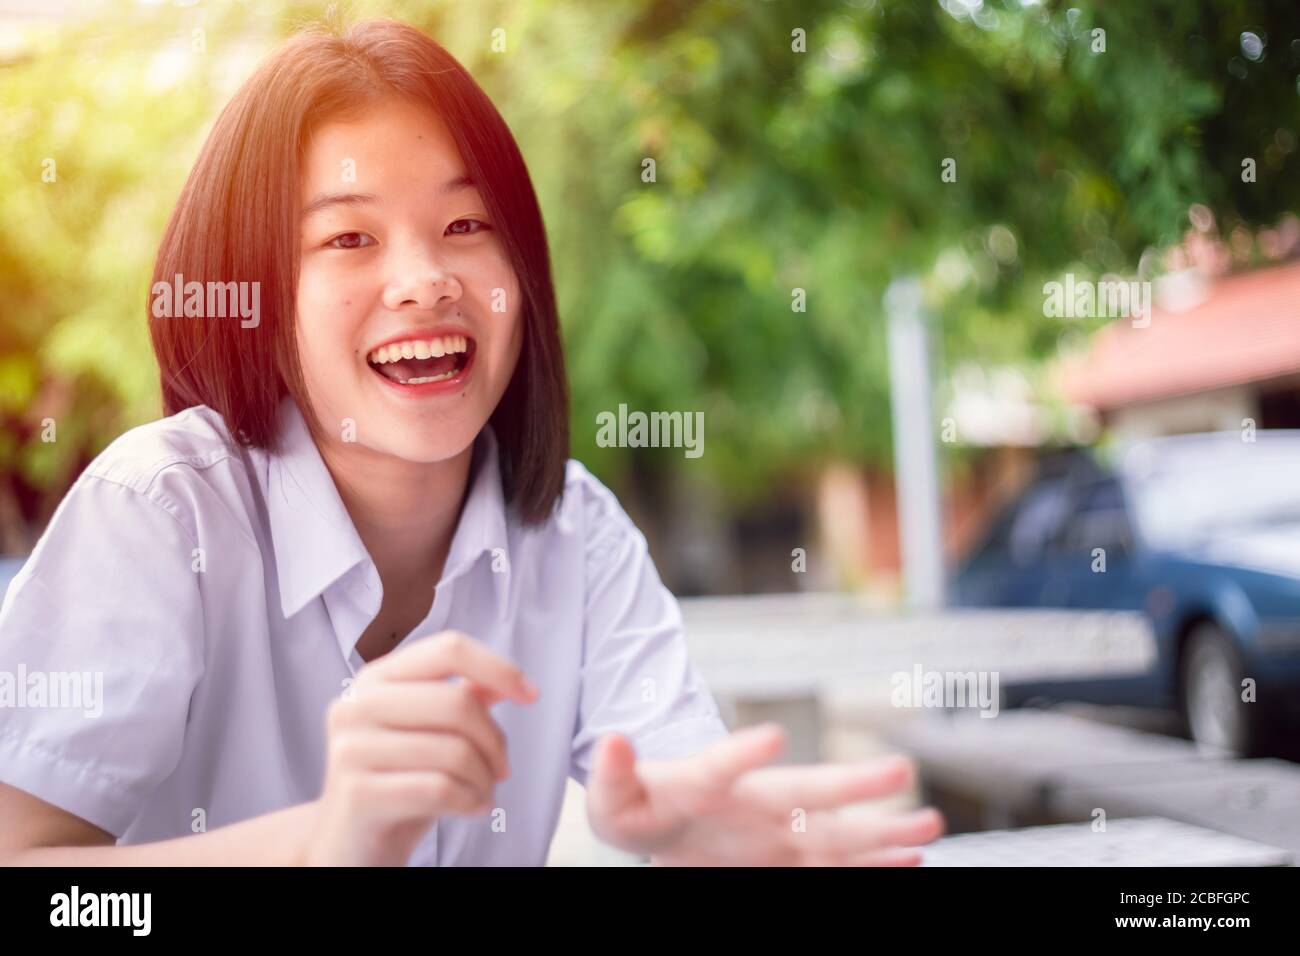 Joyeux sourire asiatique étudiant fille adolescent jeune mignon assis à l'extérieur regarder un appareil photo avec espace de copie Banque D'Images